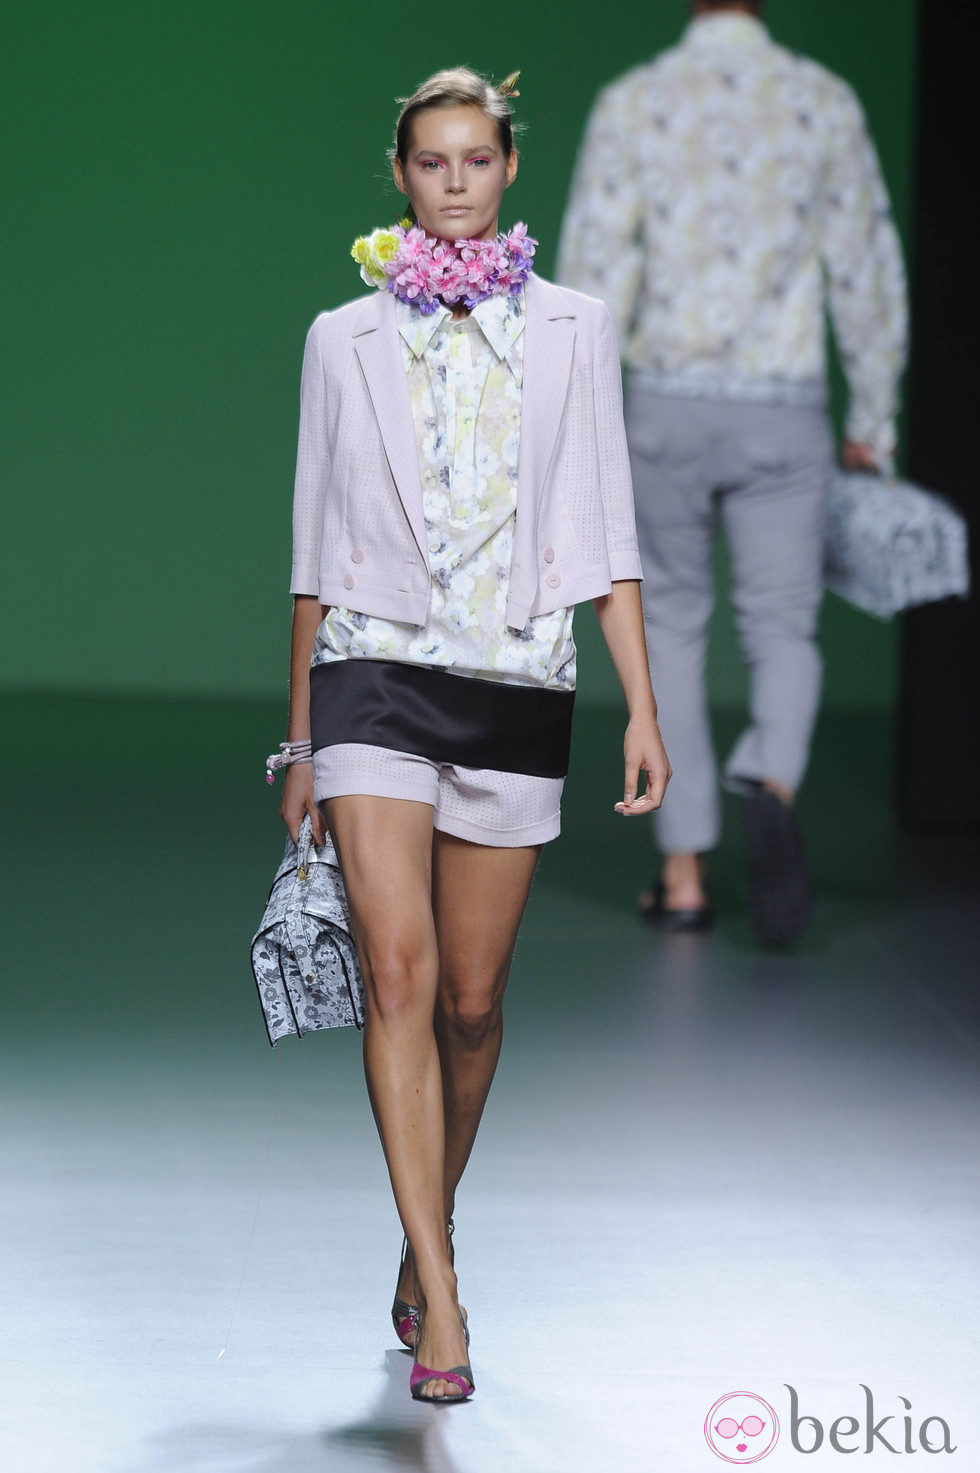 Pantalón corto, blusa de flores y chaqueta rosa palo en la colección primavera/verano 2013 de Devota&Lomba